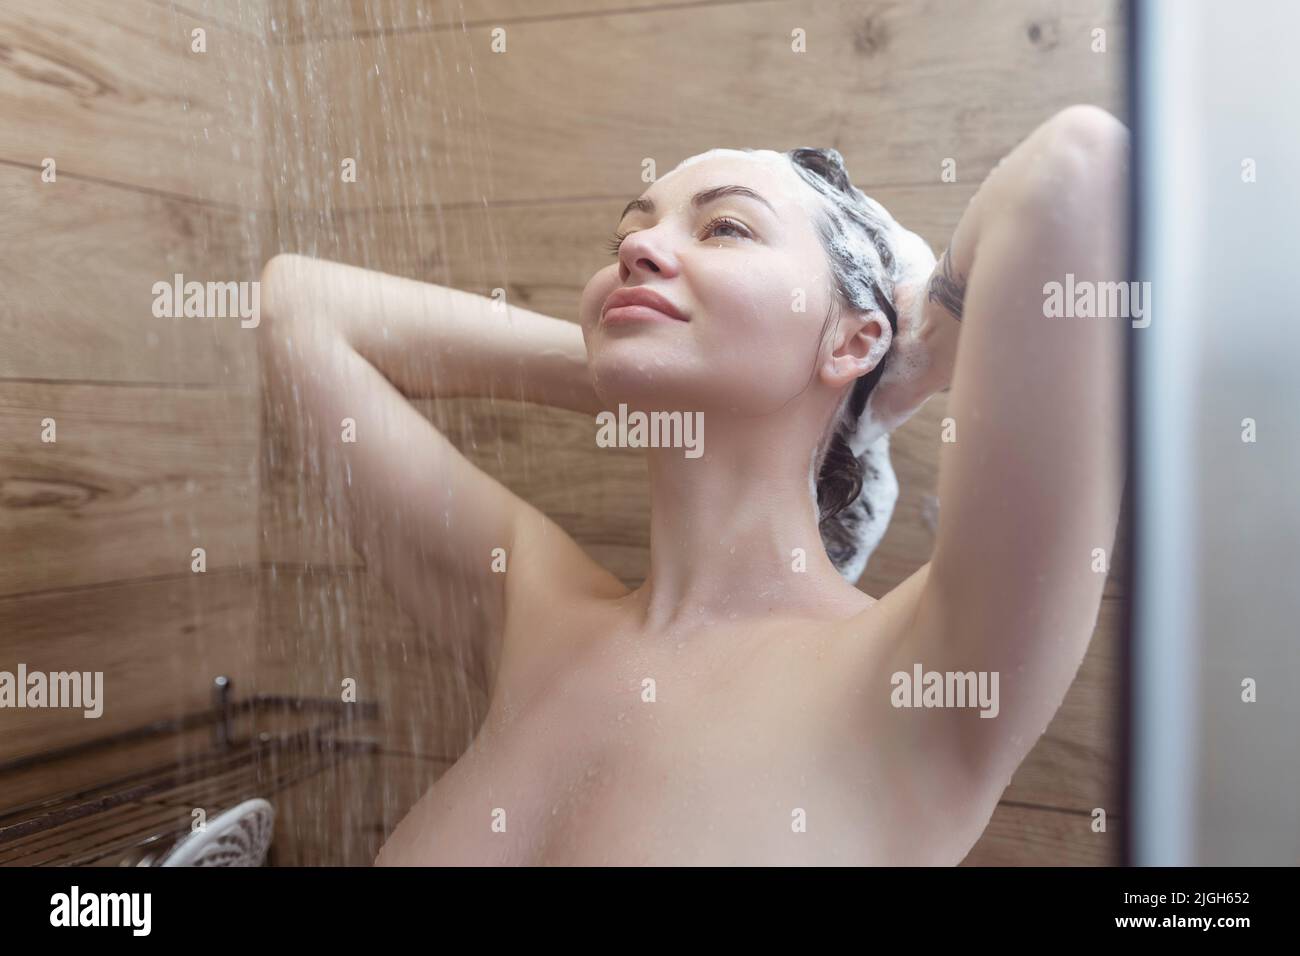 Schöne nackte junge Frau wäscht ihr Haar und verwendet Shampoo, während eine Dusche im Badezimmer Stockfoto